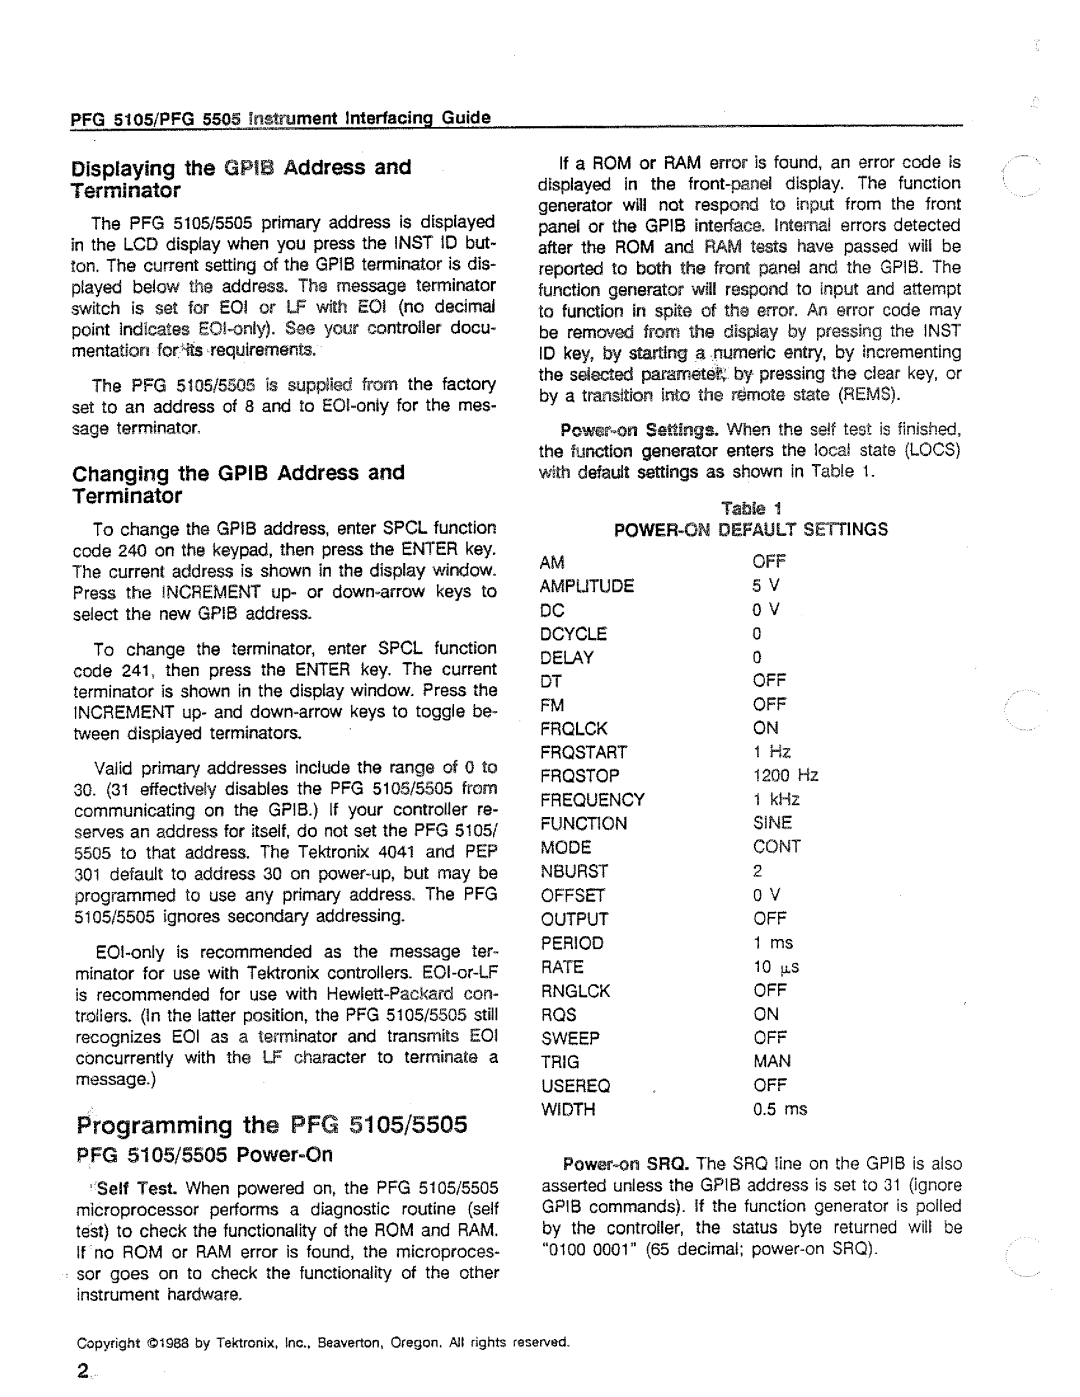 Tektronix PFG 5105, 5505 manual 